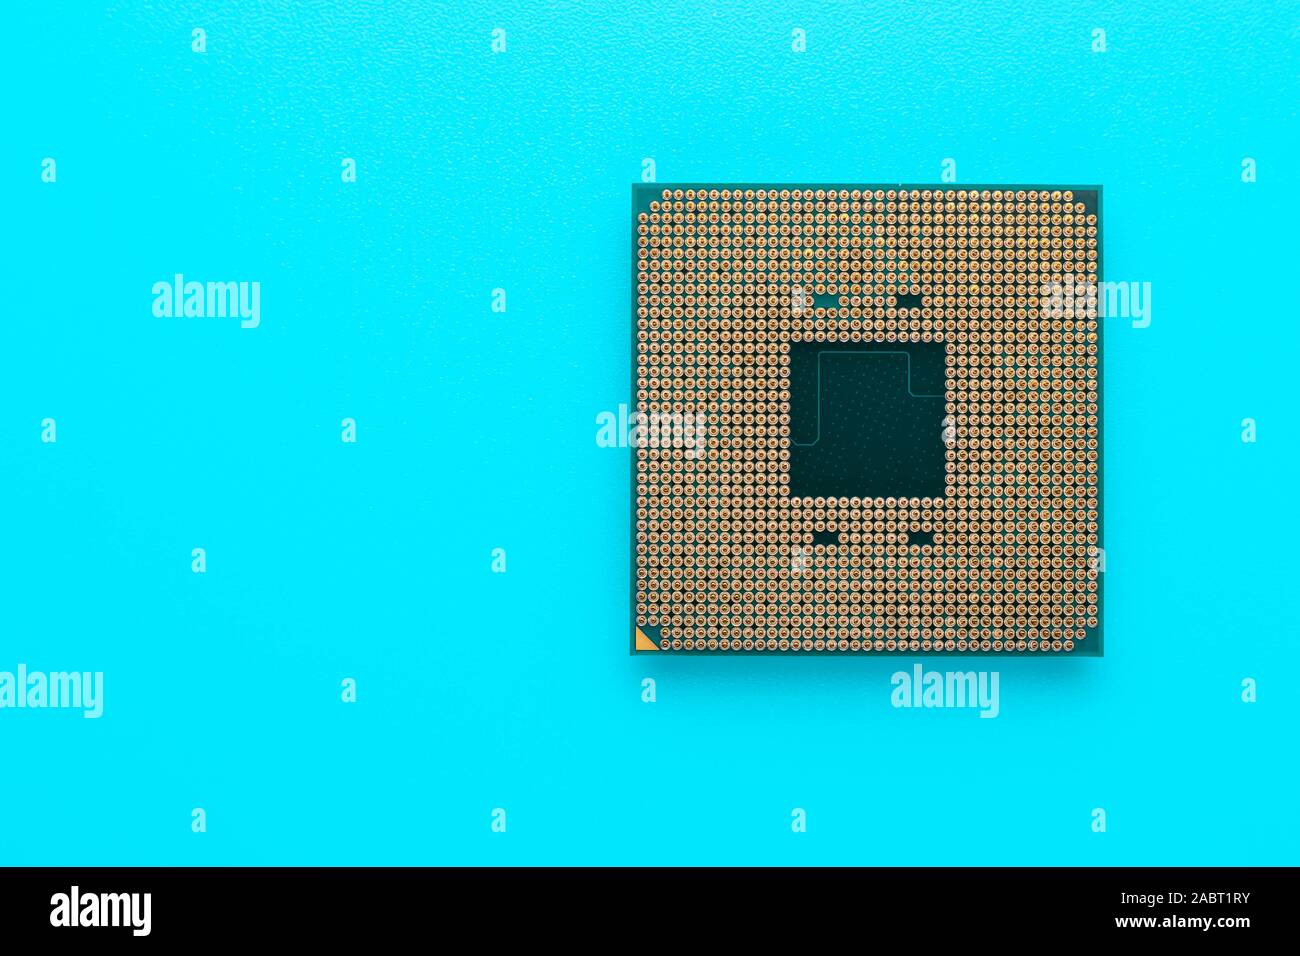 Mikrochip für Computer in einem türkisen Hintergrund. Prozessor, CPU. Technologie Konzept. Mikroprozessor der pc. Stockfoto